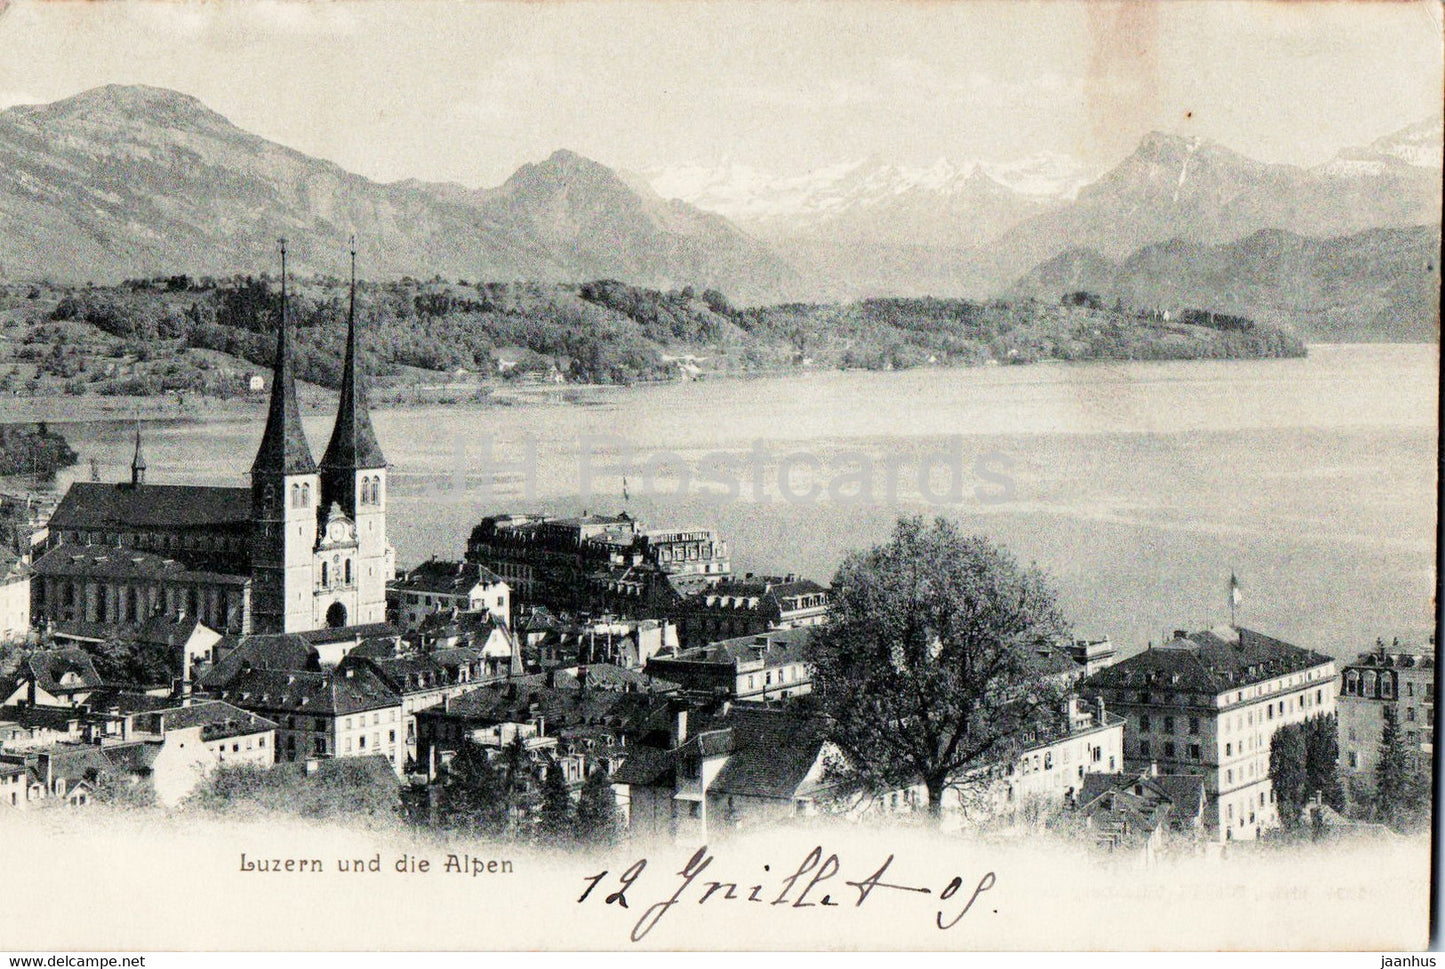 Luzern und die Alpen - Lucerne - old postcard - 1905 - Switzerland - used - JH Postcards